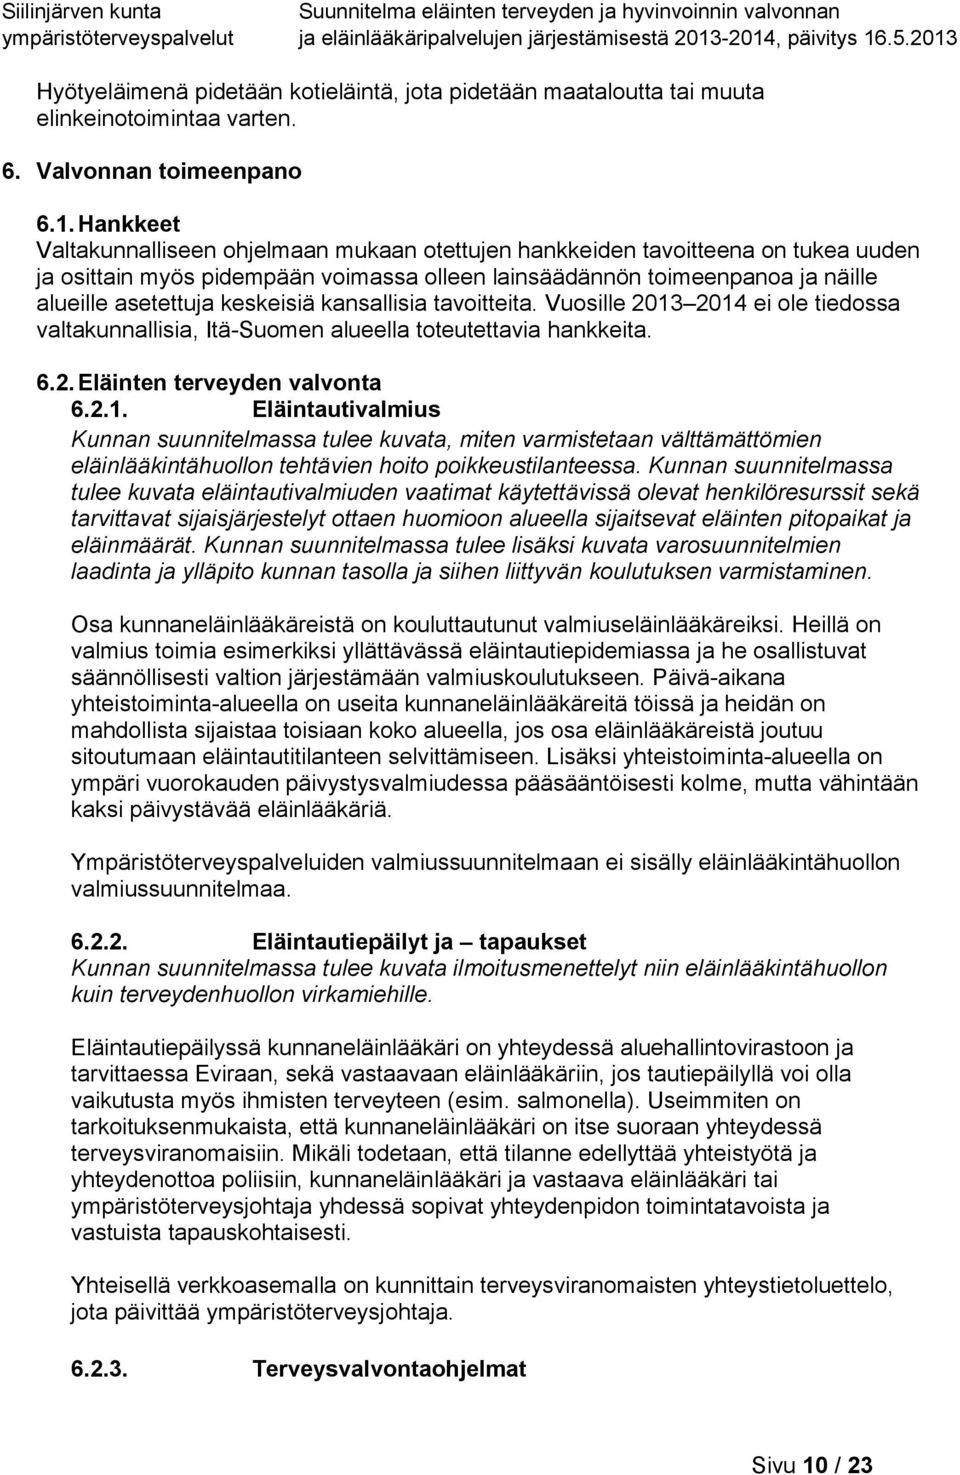 keskeisiä kansallisia tavoitteita. Vuosille 2013 2014 ei ole tiedossa valtakunnallisia, Itä-Suomen alueella toteutettavia hankkeita. 6.2. Eläinten terveyden valvonta 6.2.1. Eläintautivalmius Kunnan suunnitelmassa tulee kuvata, miten varmistetaan välttämättömien eläinlääkintähuollon tehtävien hoito poikkeustilanteessa.